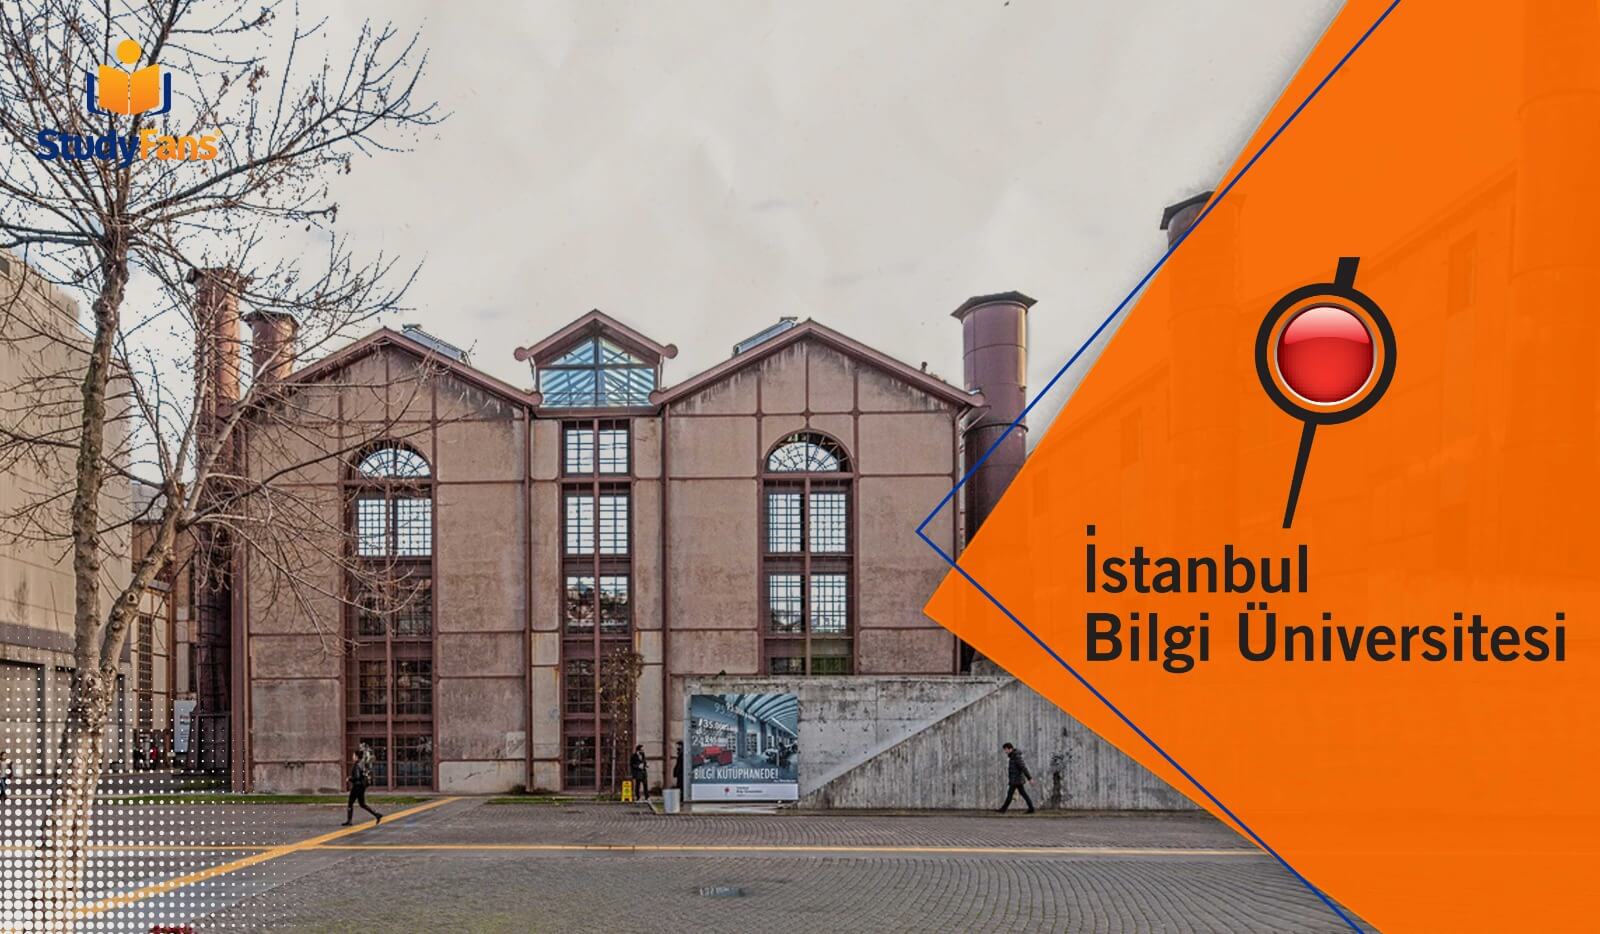 جامعة اسطنبول بيلجي | الدراسة في تركيا